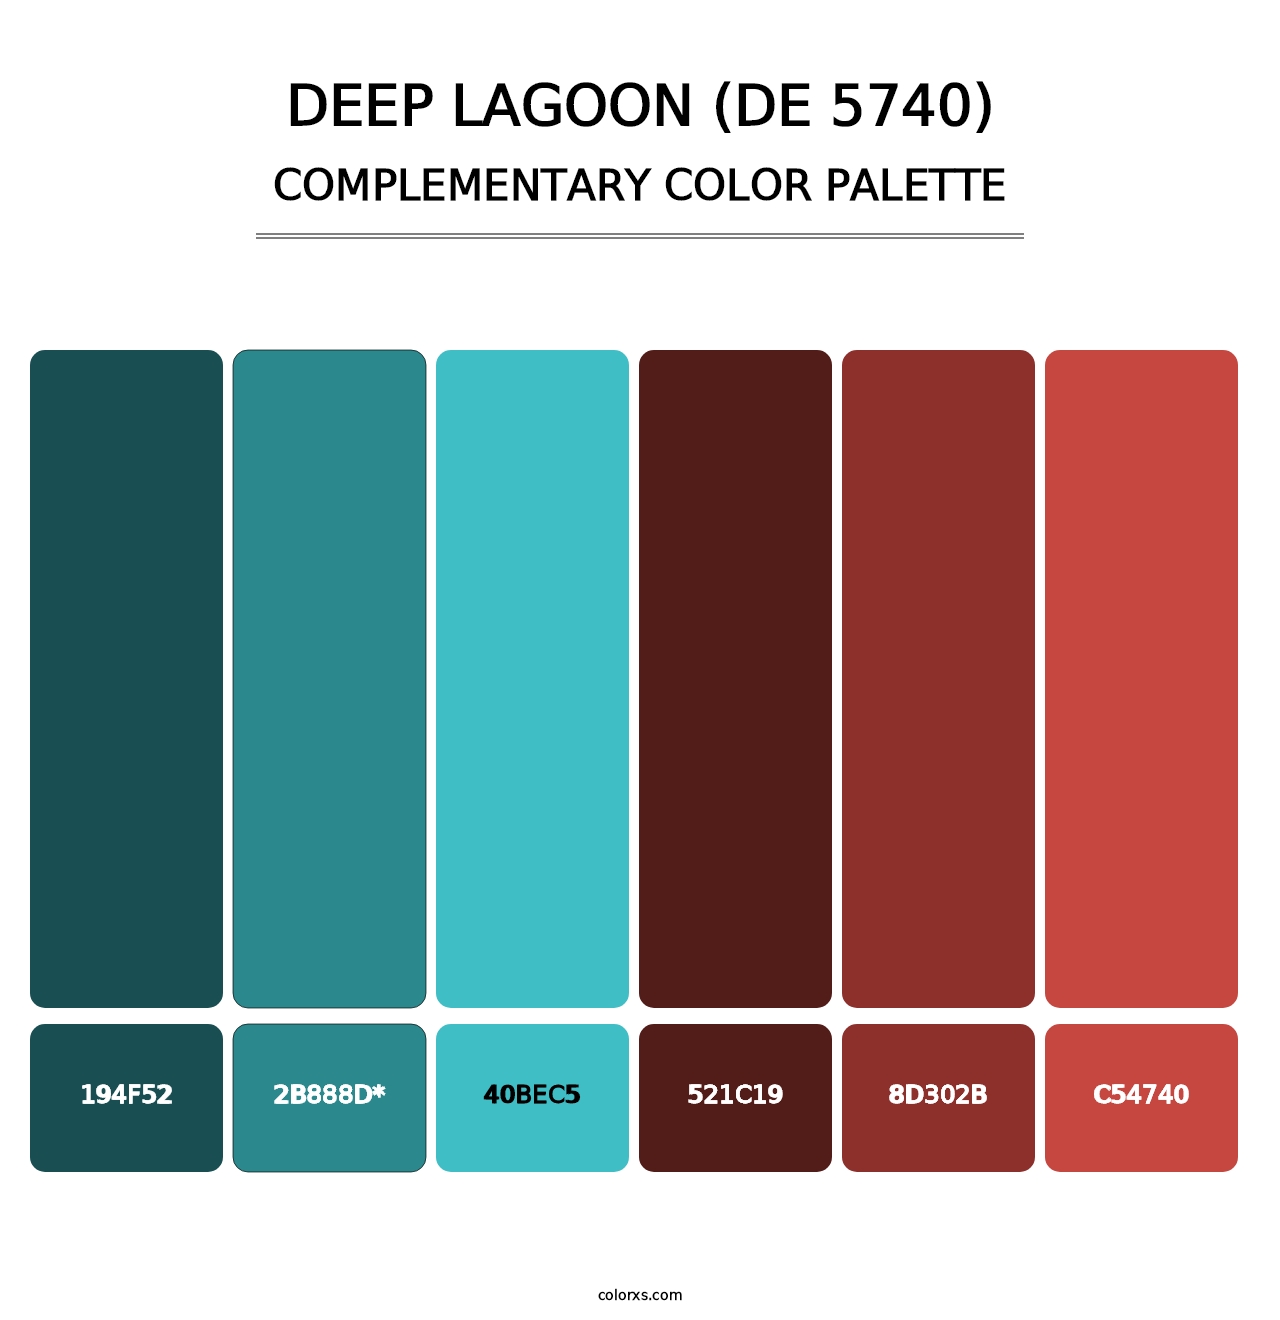 Deep Lagoon (DE 5740) - Complementary Color Palette